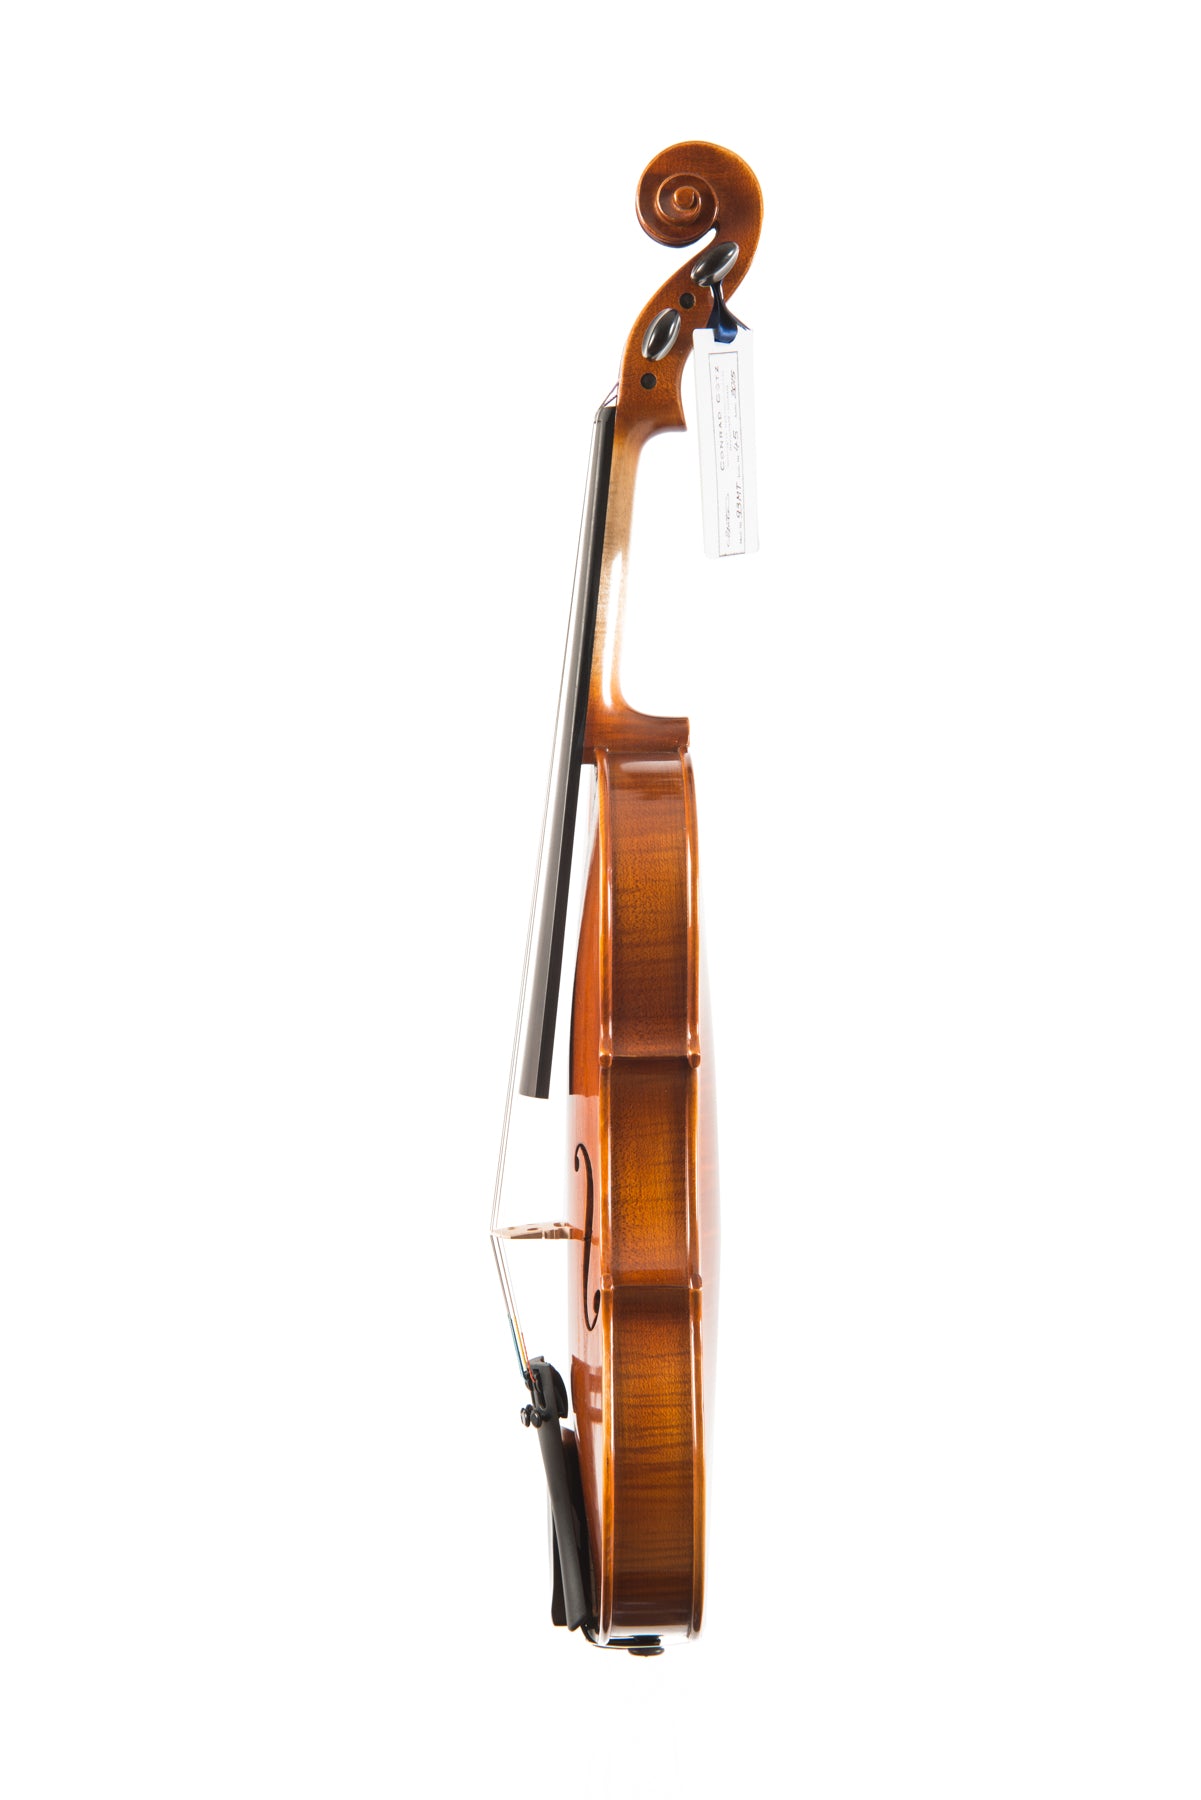 MENUETT Violin #93 MT 